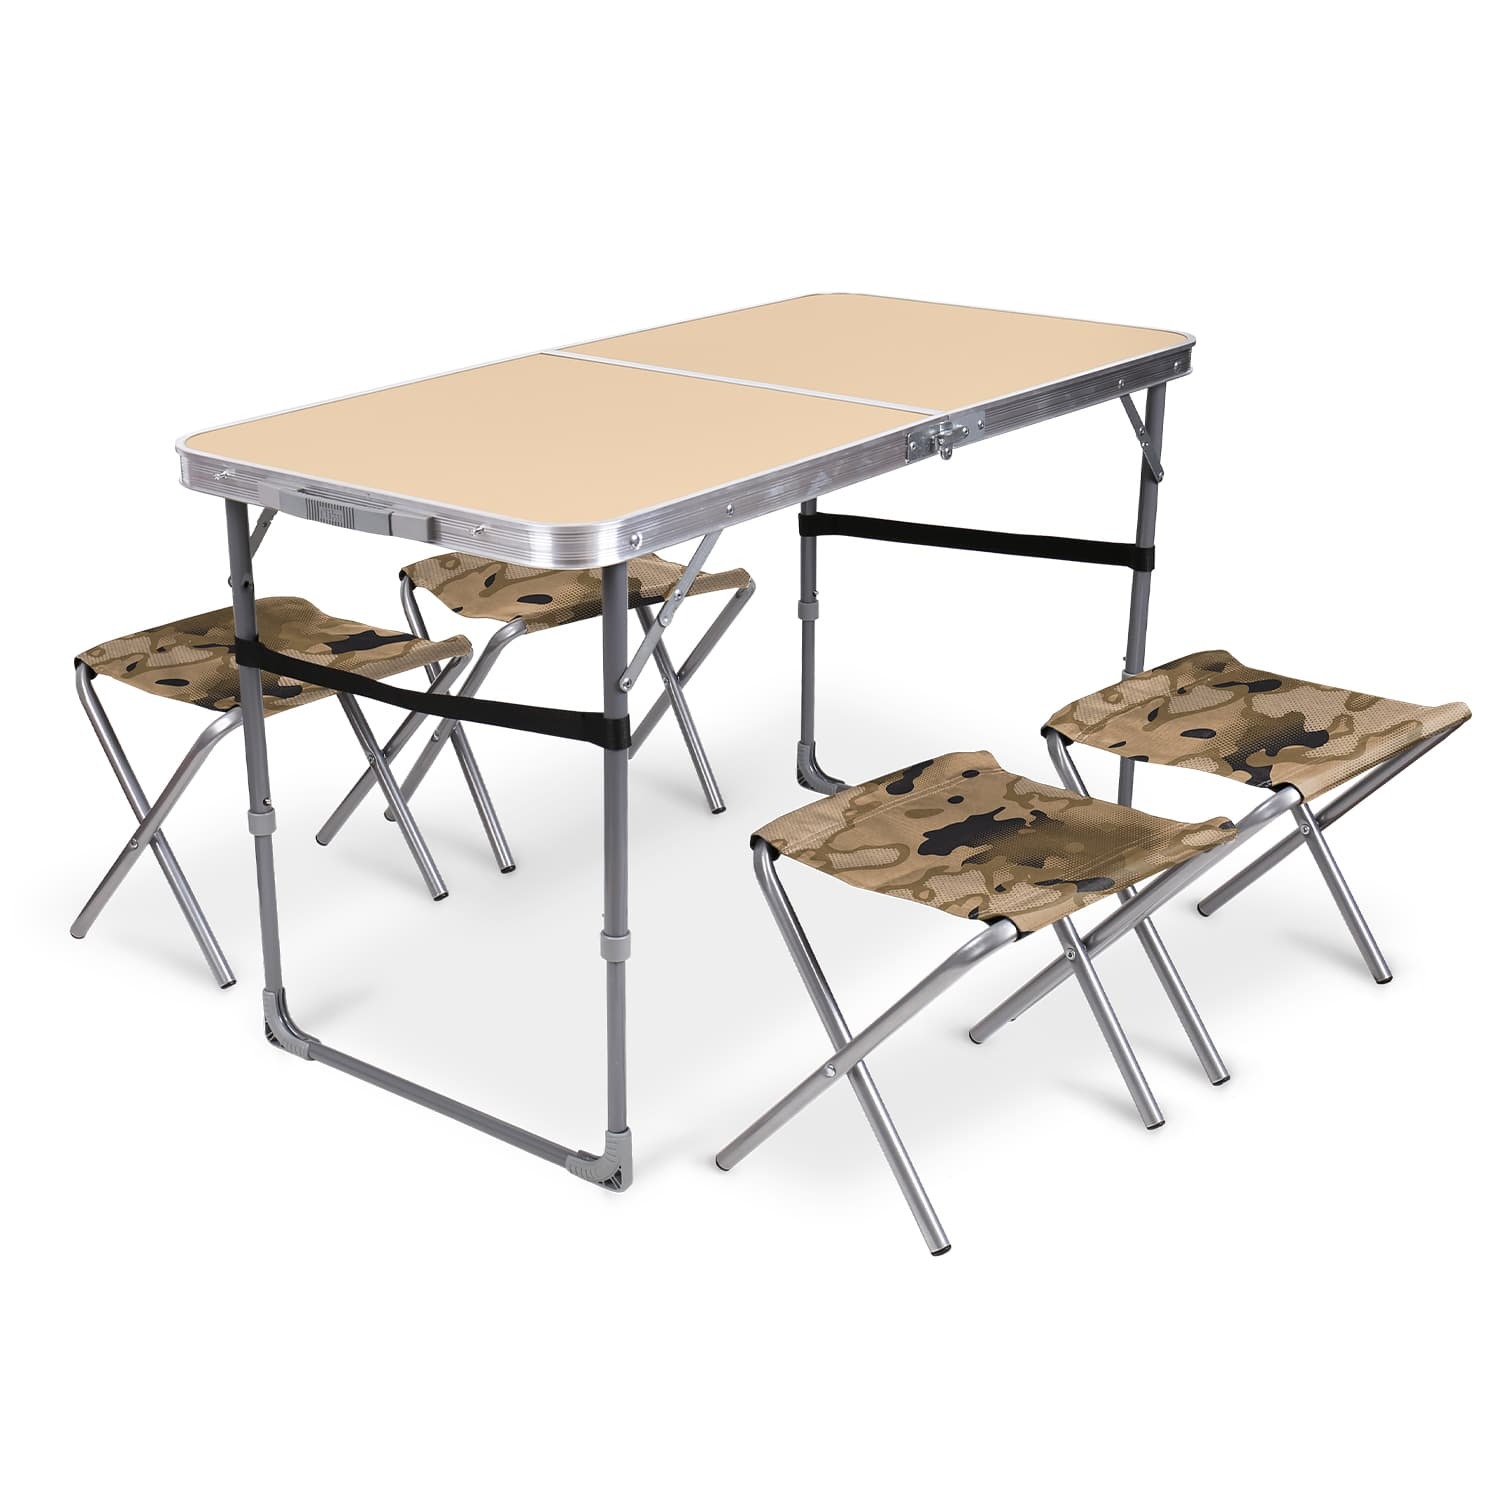 Комплект складной мебели Ника песочный стол с табуретами 5 предметов, цвет серый